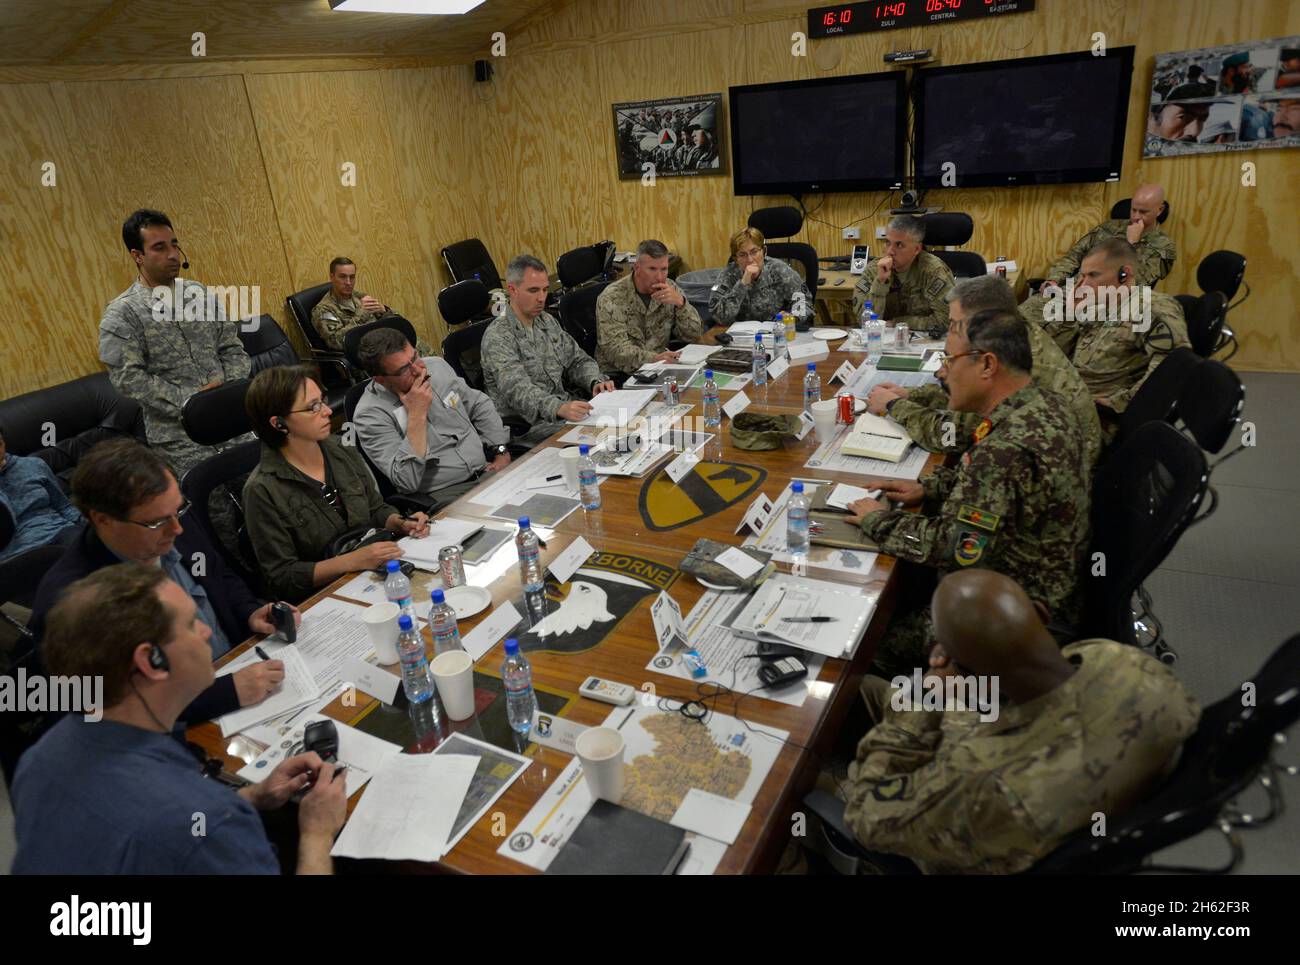 Il Vice Segretario della Difesa degli Stati Uniti Ash carter, al centro della sinistra, ascolta il generale maggiore dell'esercito nazionale afghano Mohammed Zaman Waziri durante un briefing sullo stato delle forze afghane alla base operativa avanzata Gamberi, provincia di Laghman, Afghanistan, 13 maggio 2013. Foto Stock